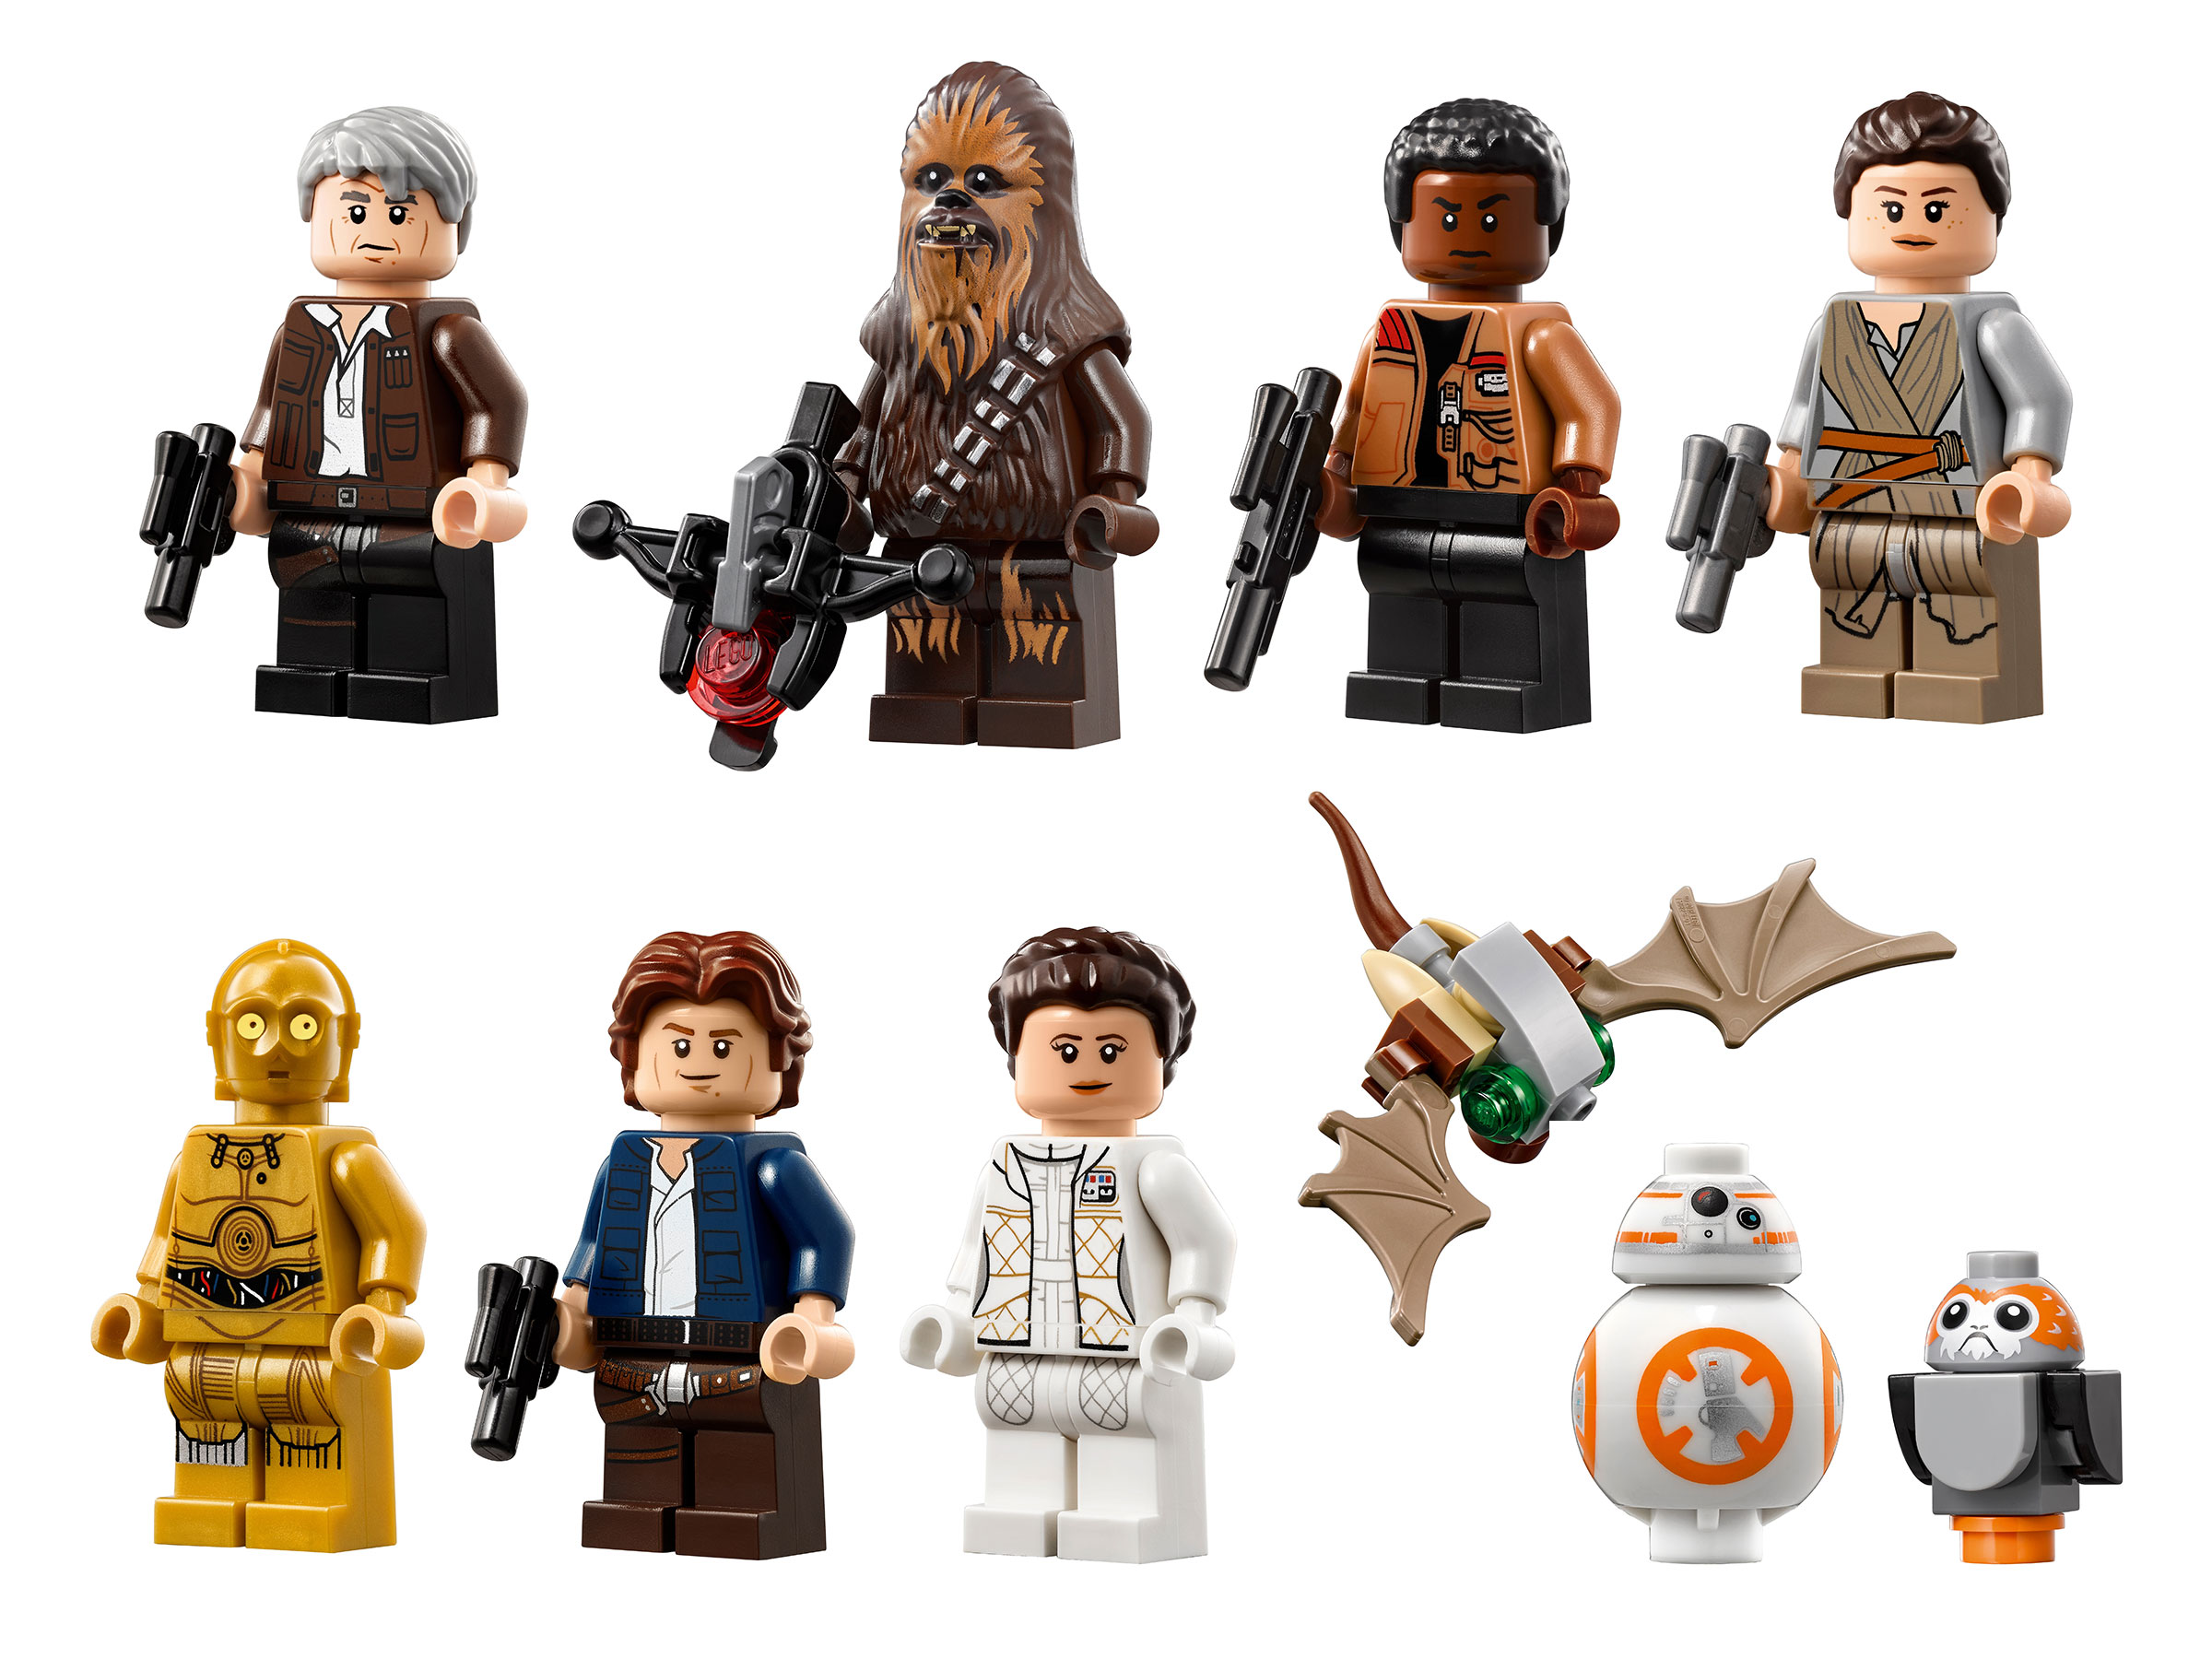 Byggsatser Lego Star Wars - Millennium Falcon